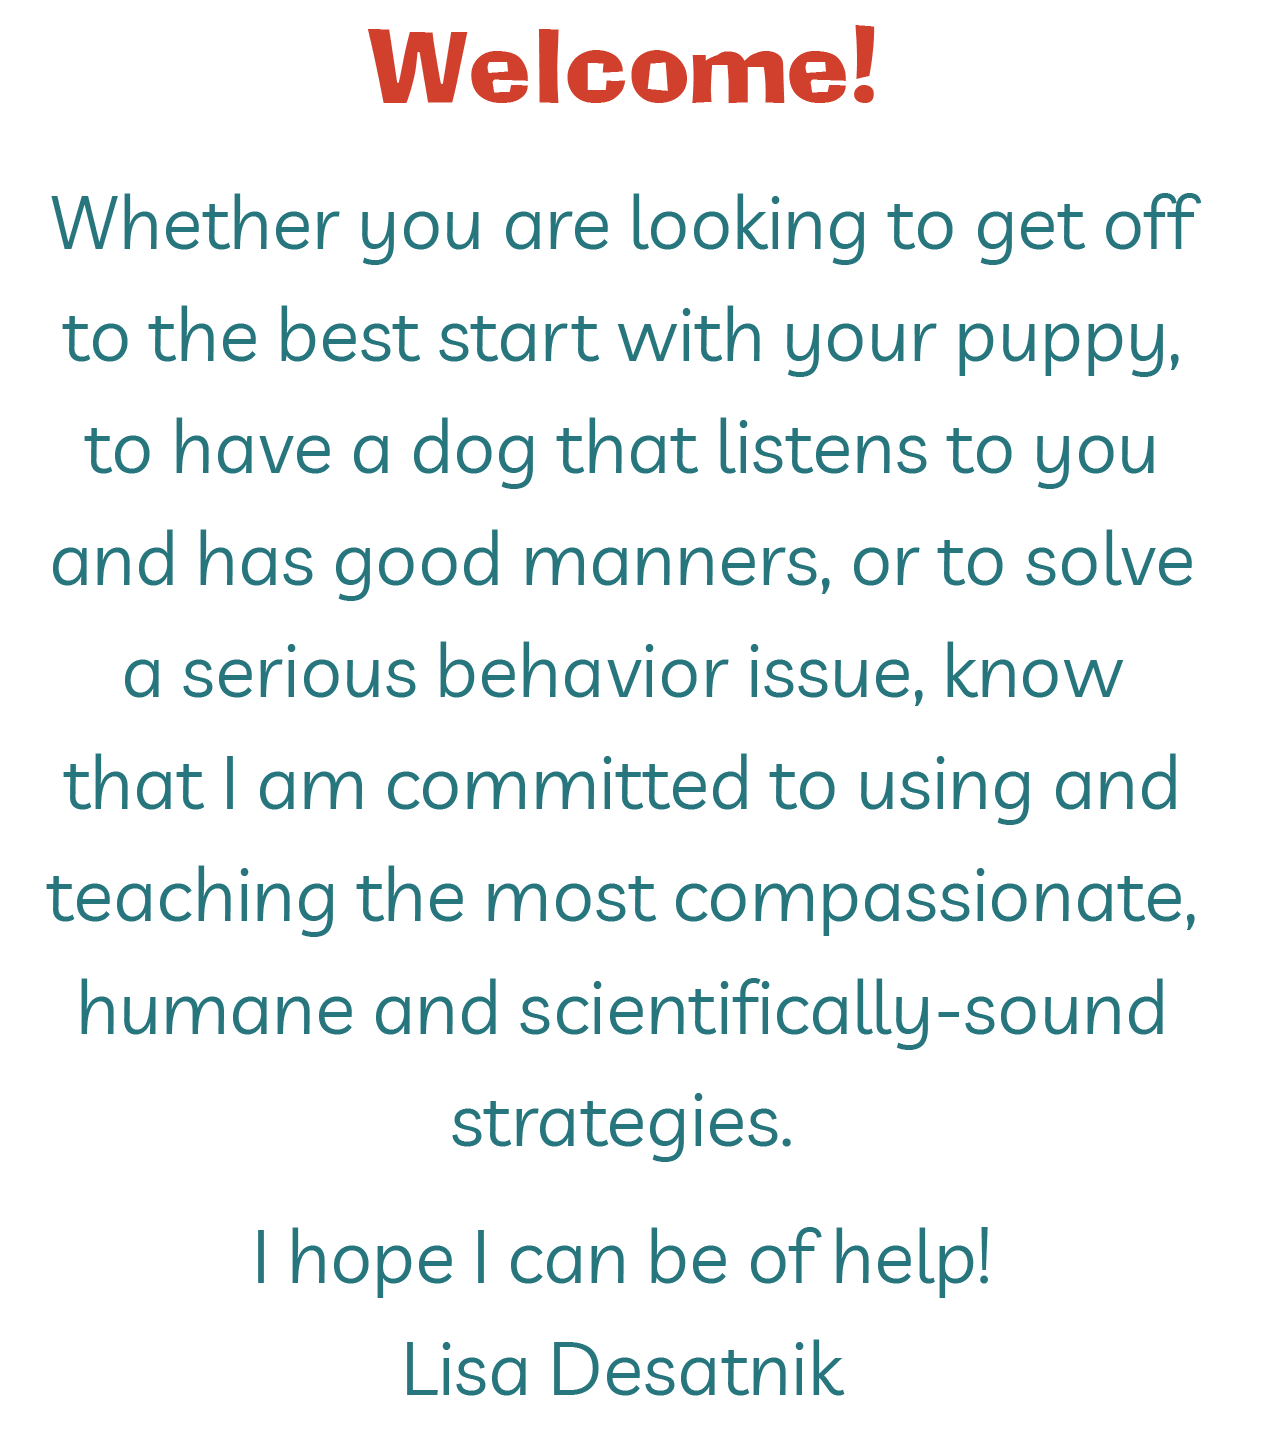 Welcome to the website of Cincinnati Certified Dog Trainer Lisa Desatnik